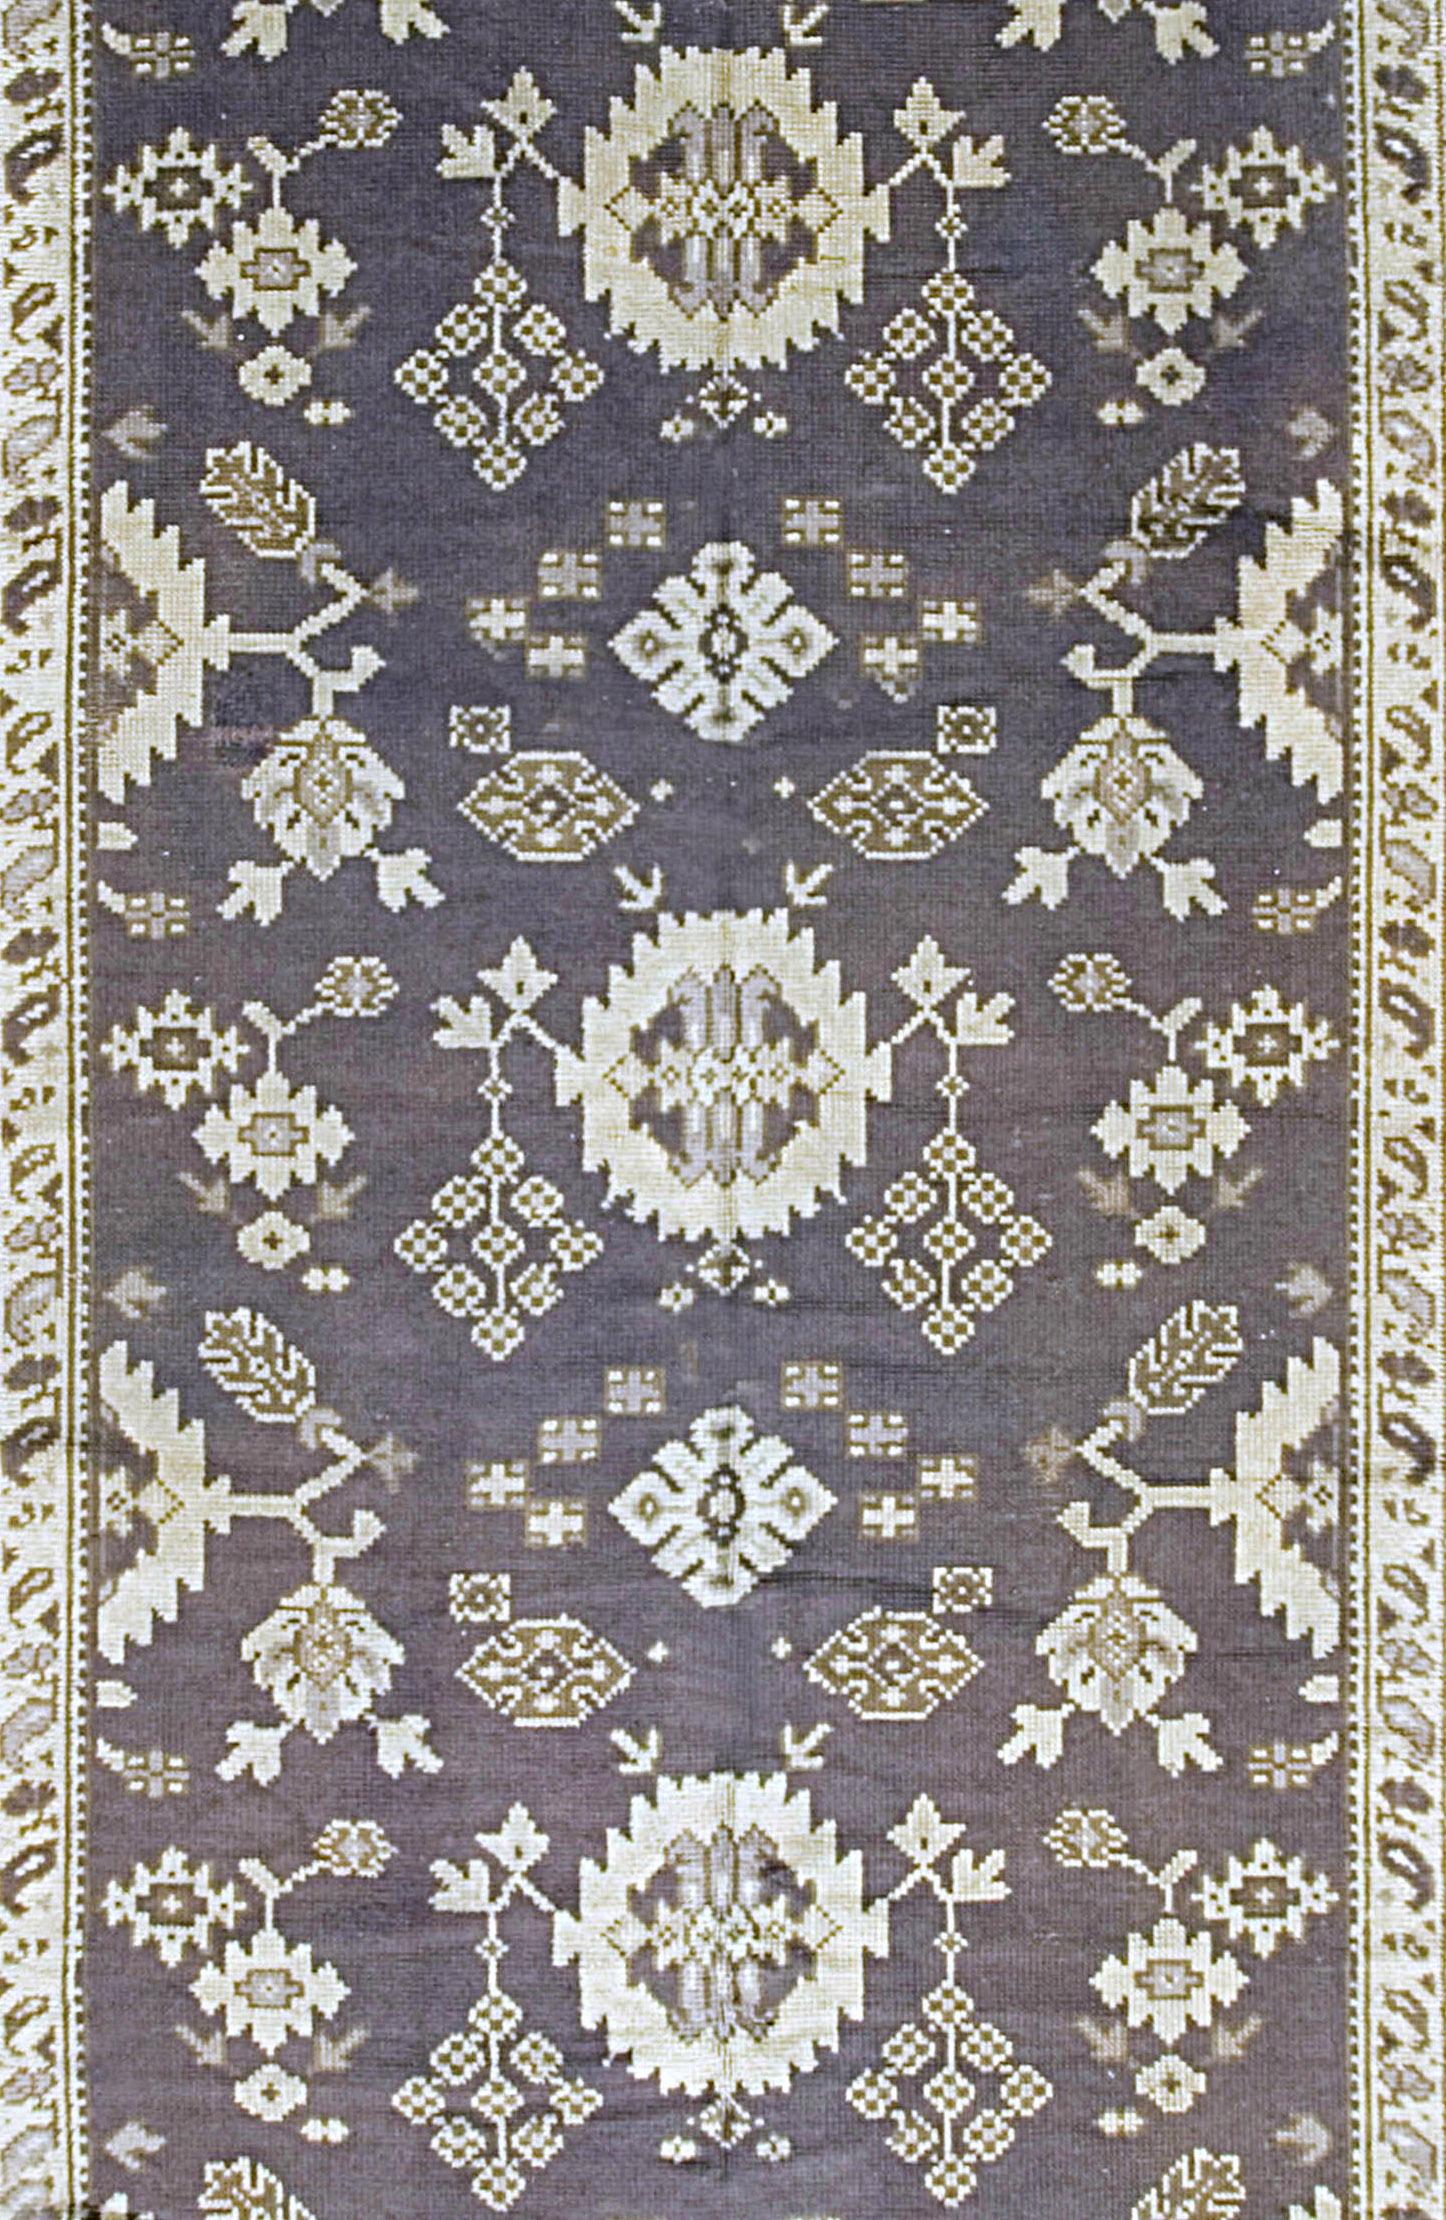 Antique tapis irlandais Donegal Arts & Crafts Runner circa 1900, 6' x 14'11. Une sorte d'Oushak irlandais avec un fond bleu ardoise présentant une répétition de bourgeons et de fleurs semi-géométriques ainsi que des médaillons en dents de scie.